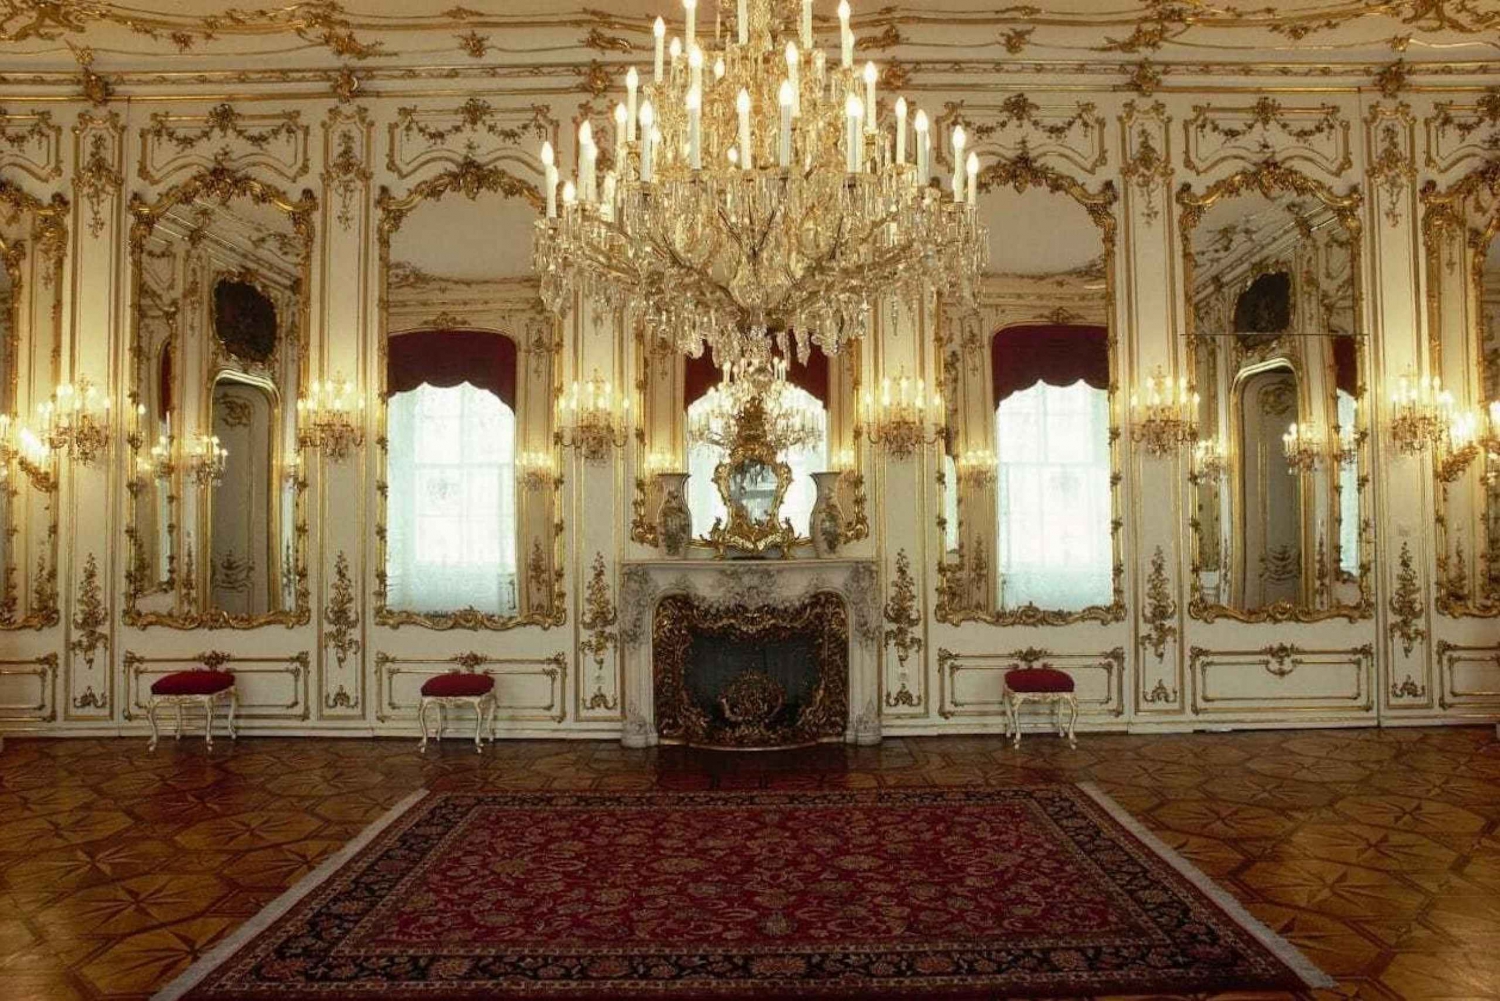 Vienne : visite guidée de la Hofburg et du musée de l'impératrice Sisi